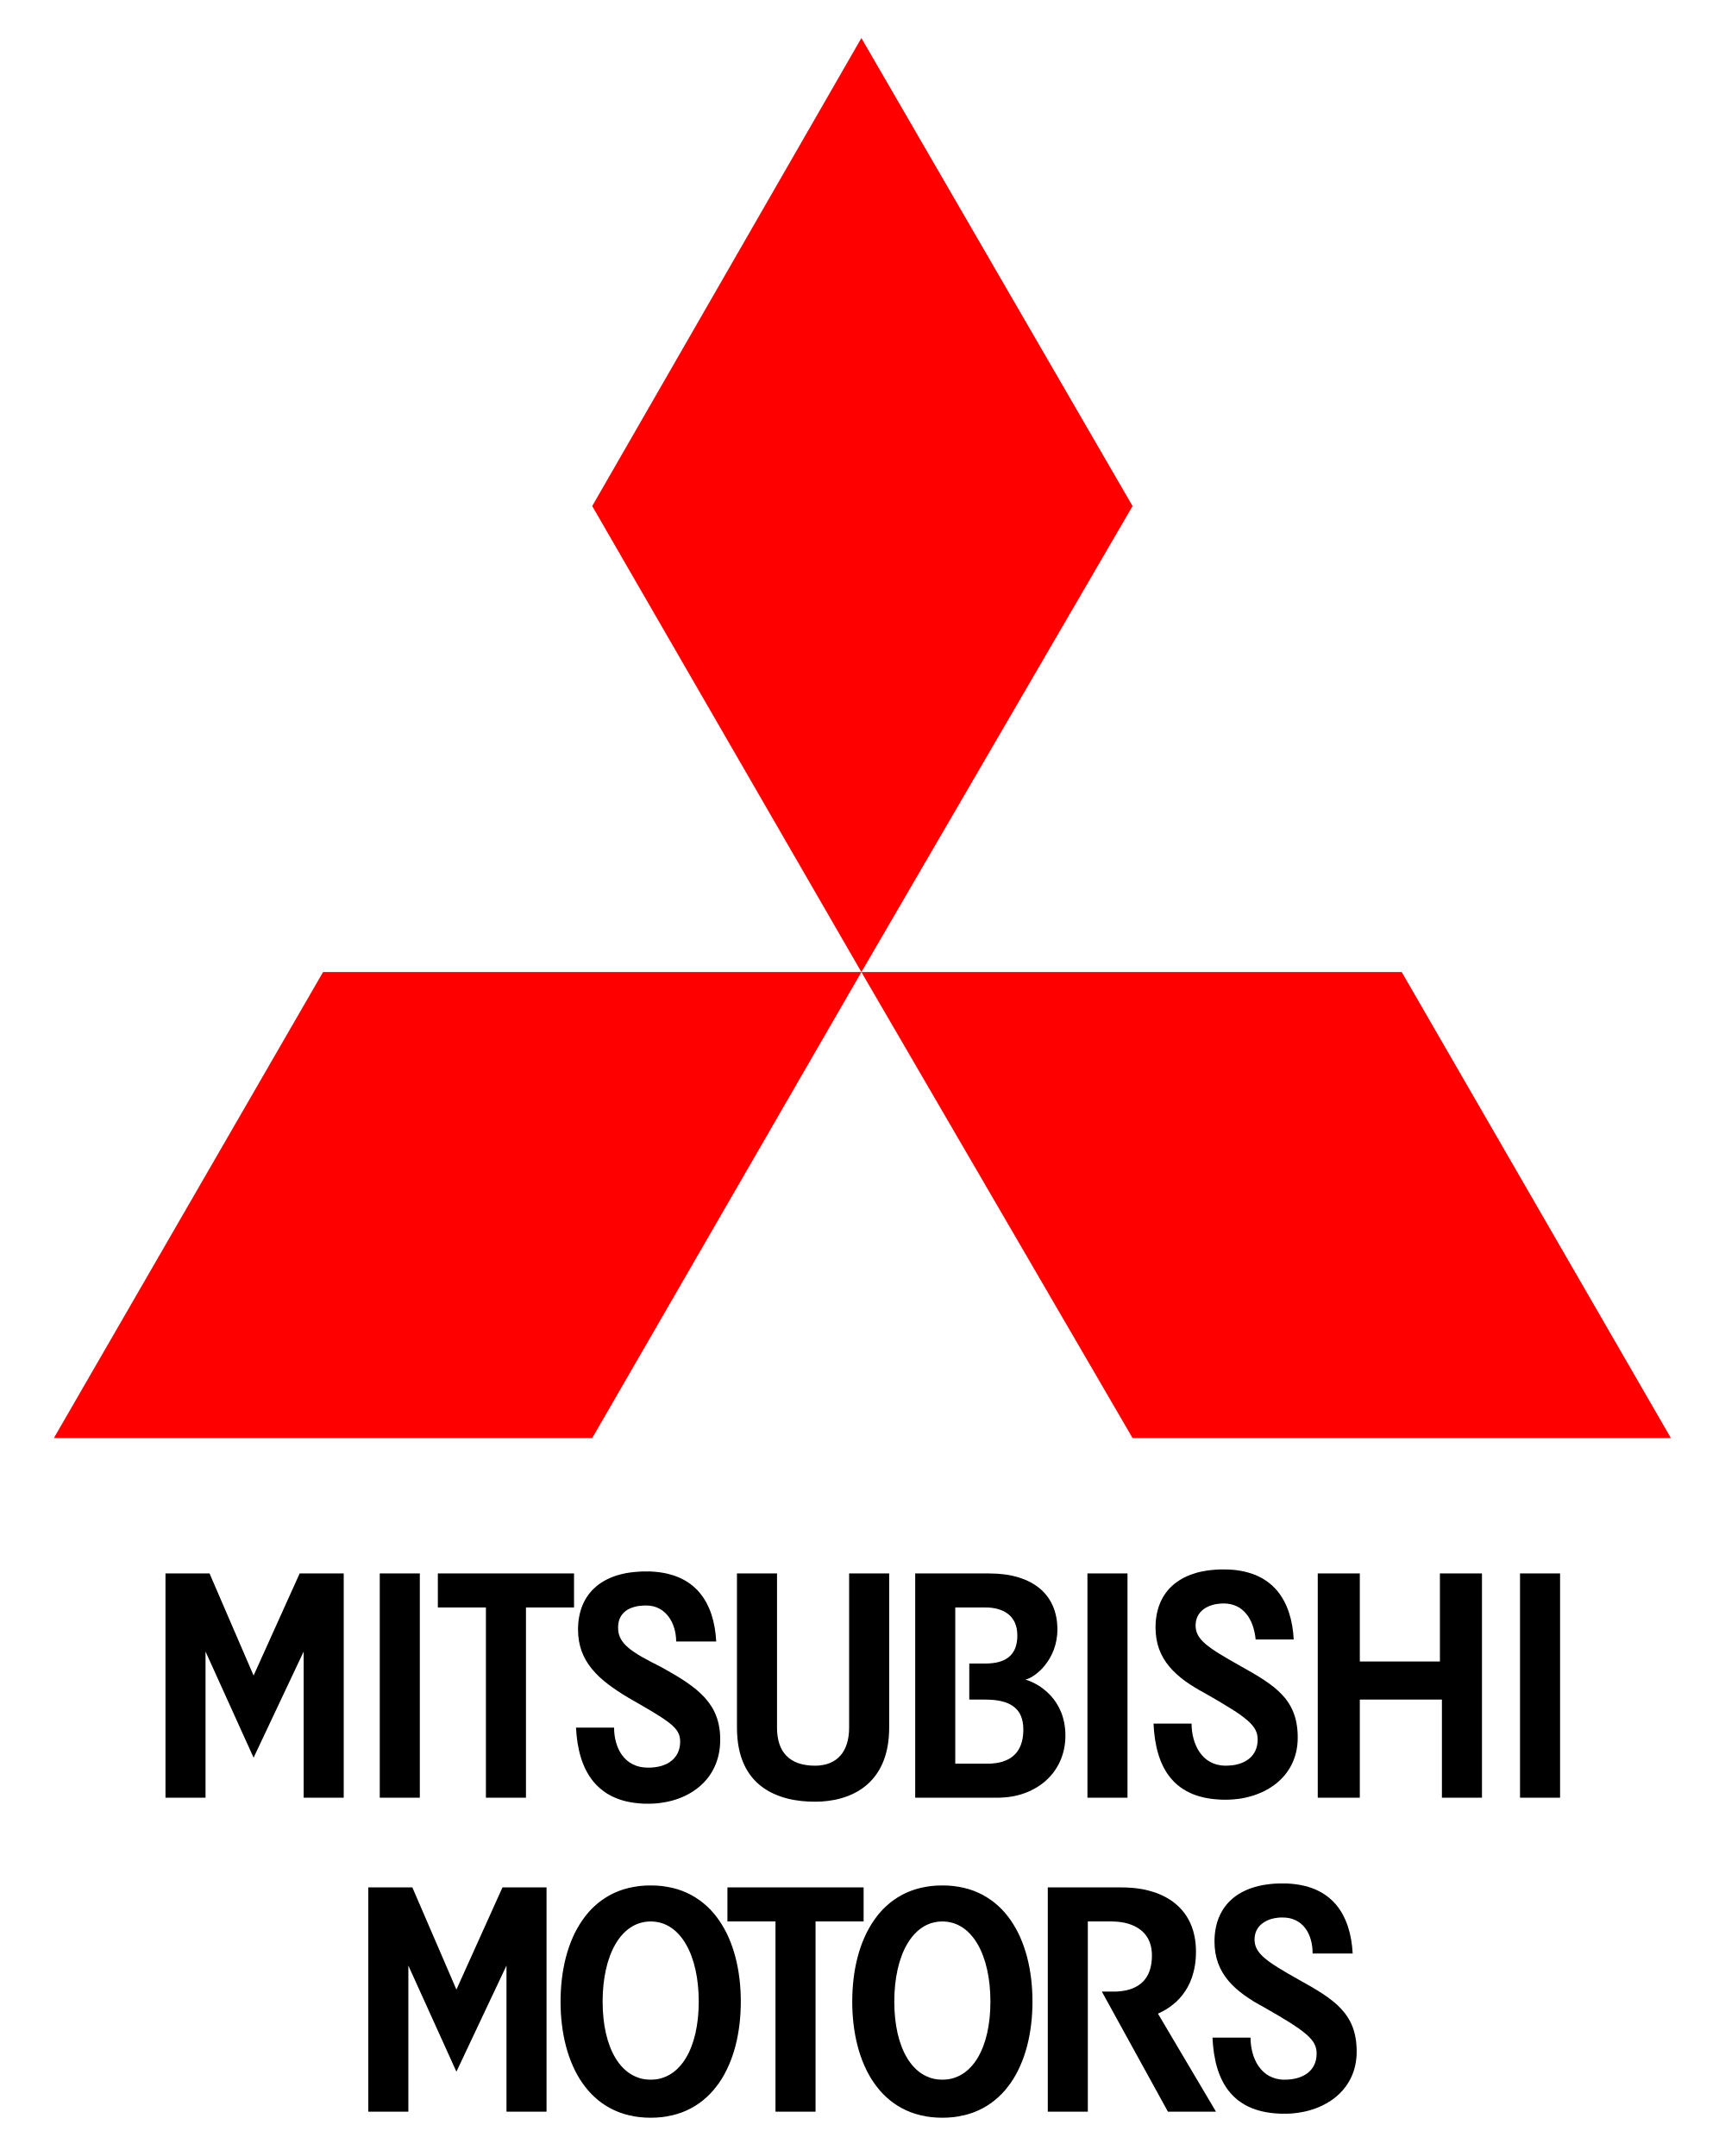 Mitsubishi logo PNG image